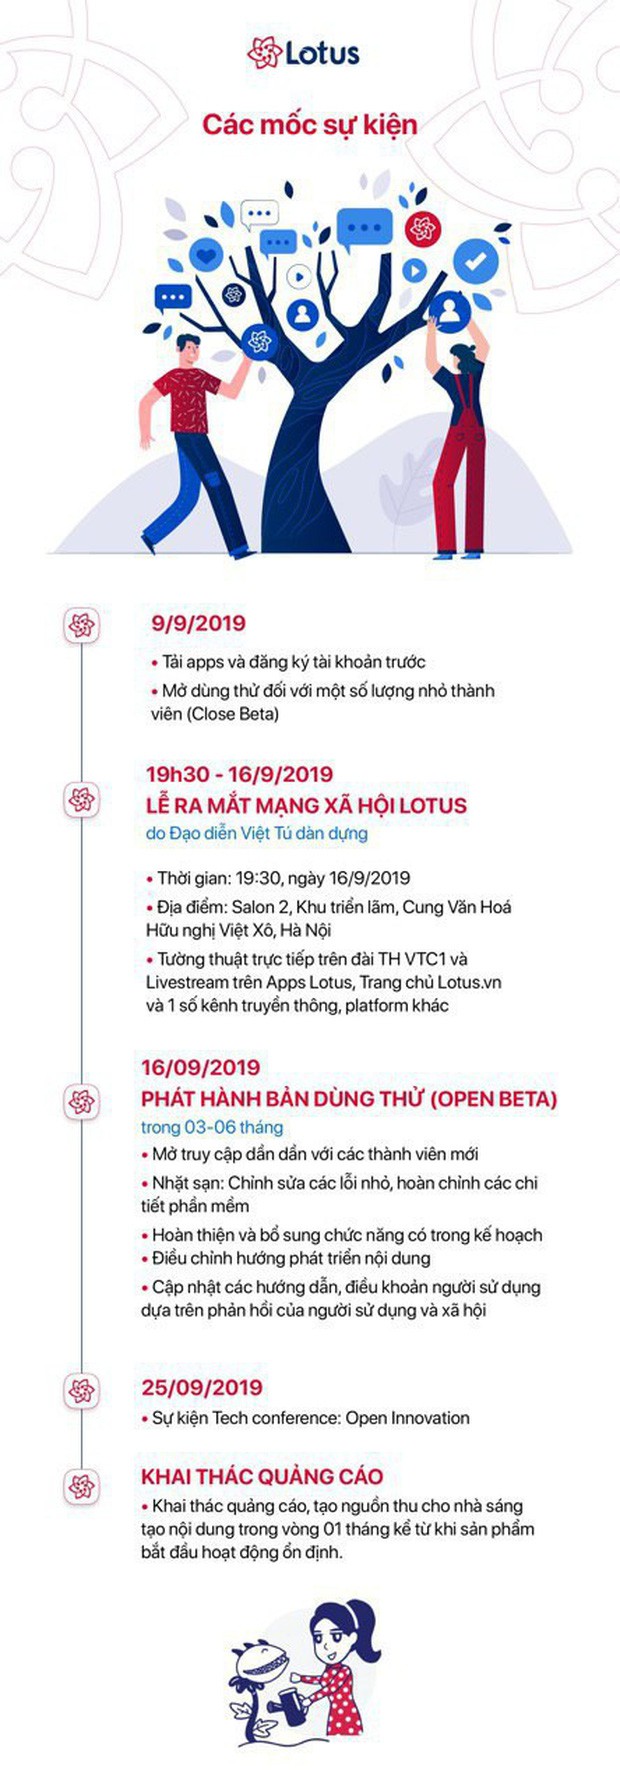 Đạo diễn Việt Tú hé lộ những thông tin nóng hổi trước giờ G lễ ra mắt MXH Lotus: Đây sẽ là sự kiện công nghệ làm thỏa mãn tất cả mọi người! - Ảnh 7.